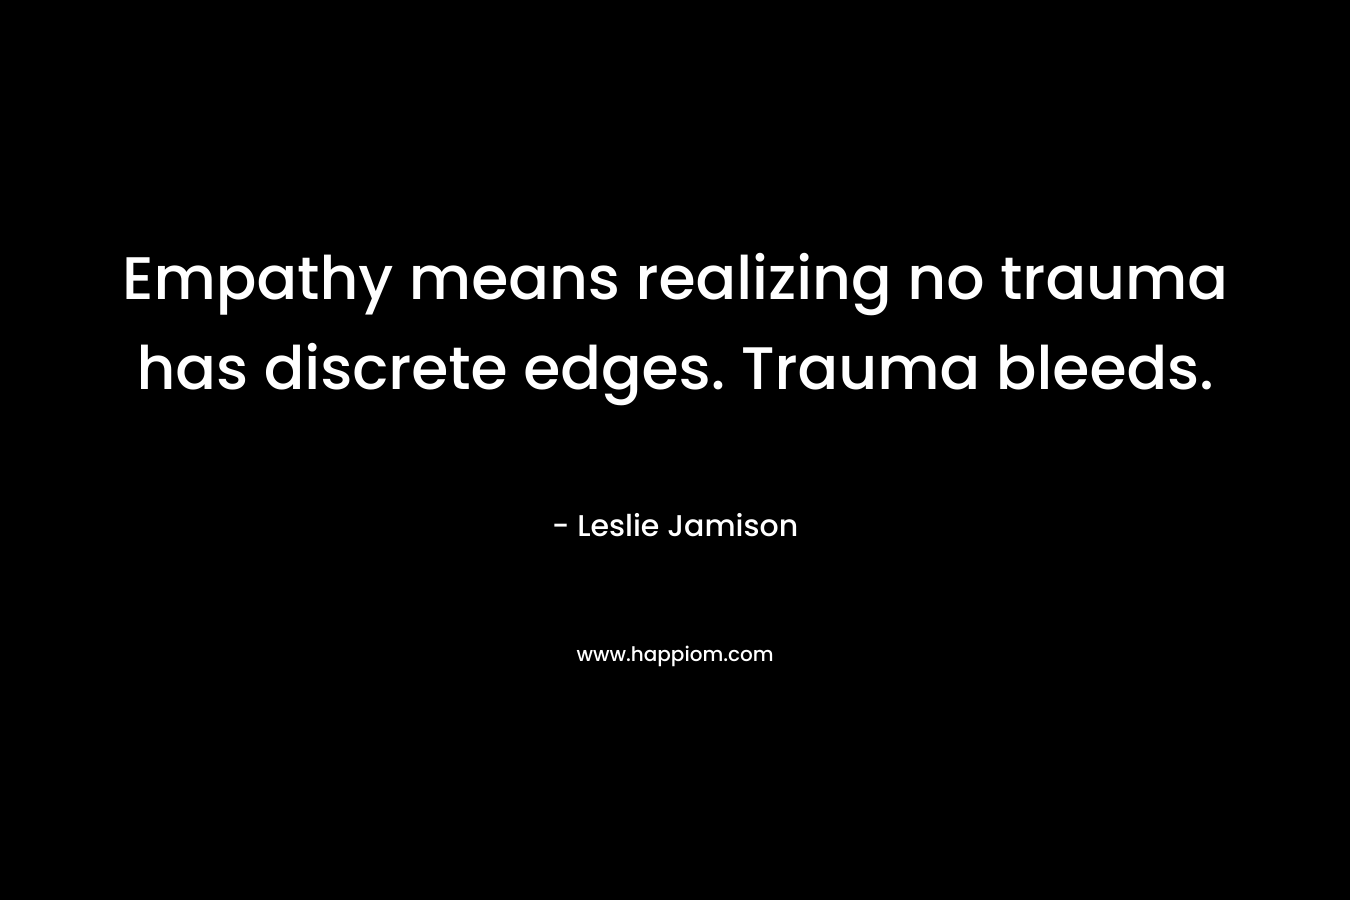 Empathy means realizing no trauma has discrete edges. Trauma bleeds.